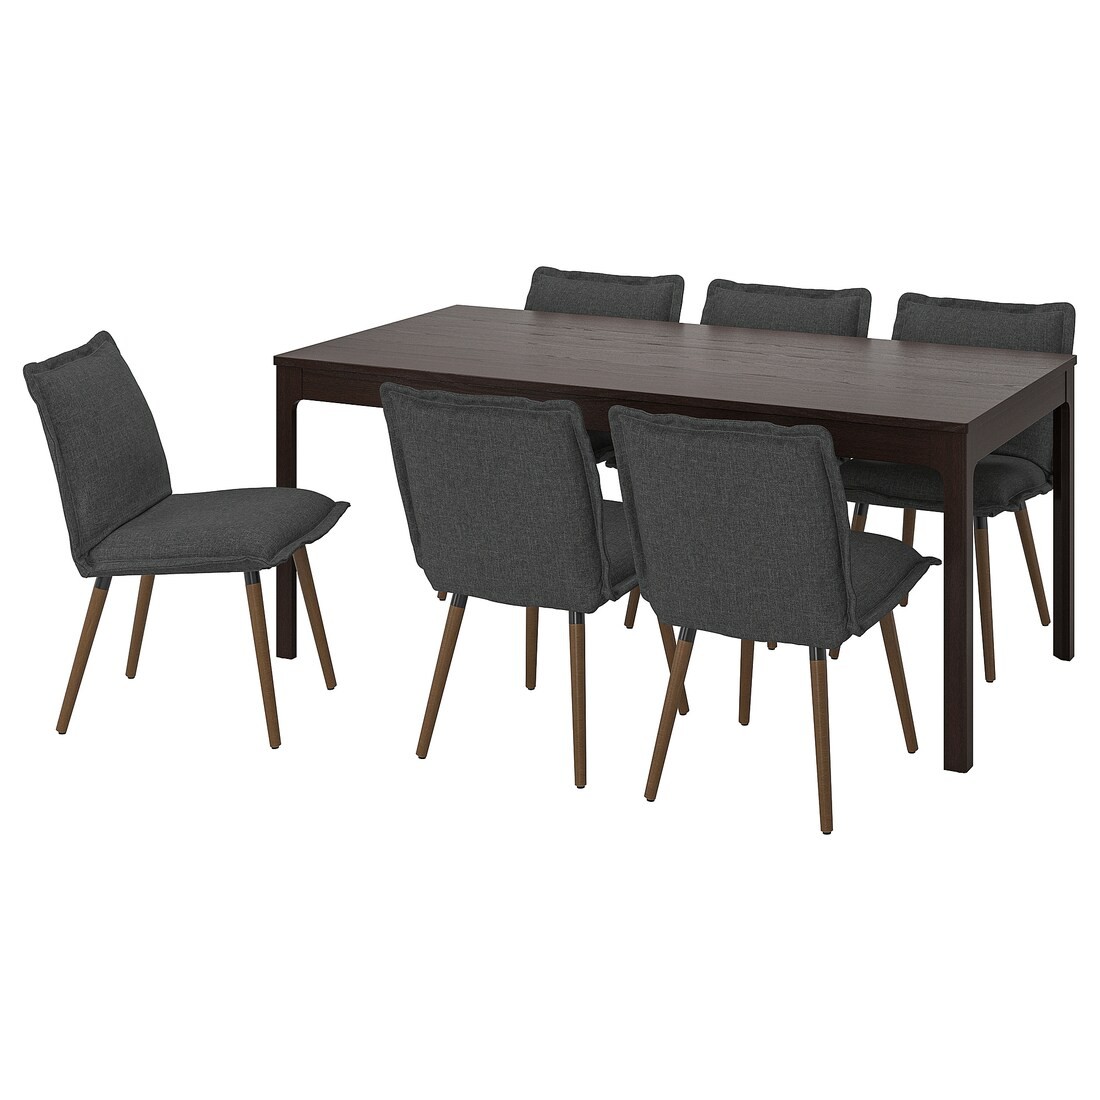 EKEDALEN / KLINTEN Стол и 6 стульев, темно-коричневый / Kilanda темно-серый